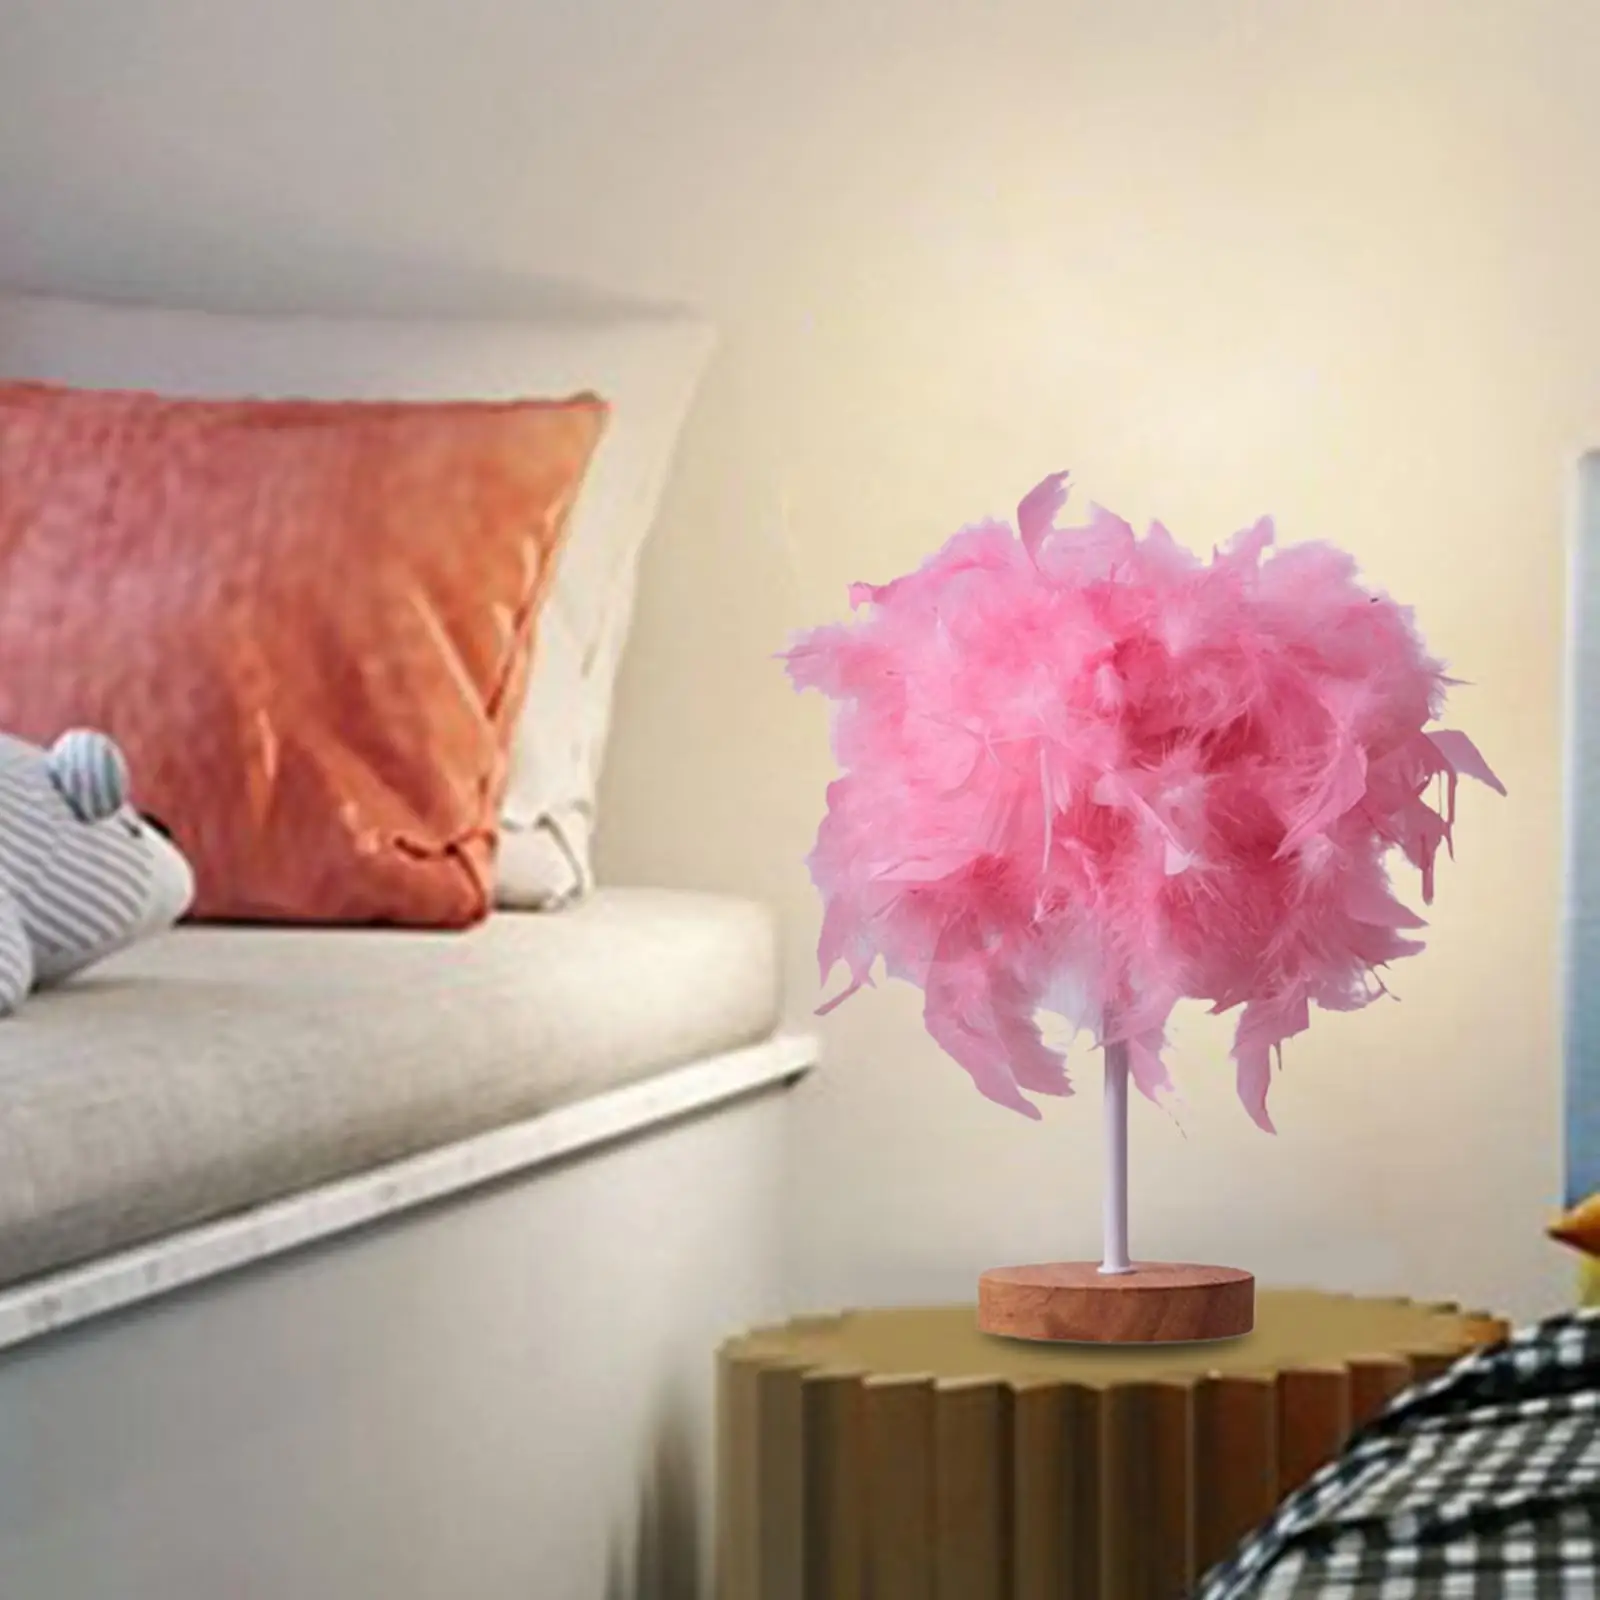 Elegant LED Table Lamp Desk Light Romantic Lighting Reading Lamp Atmosphere Light for Living Room Bedroom Dorm Home Decor